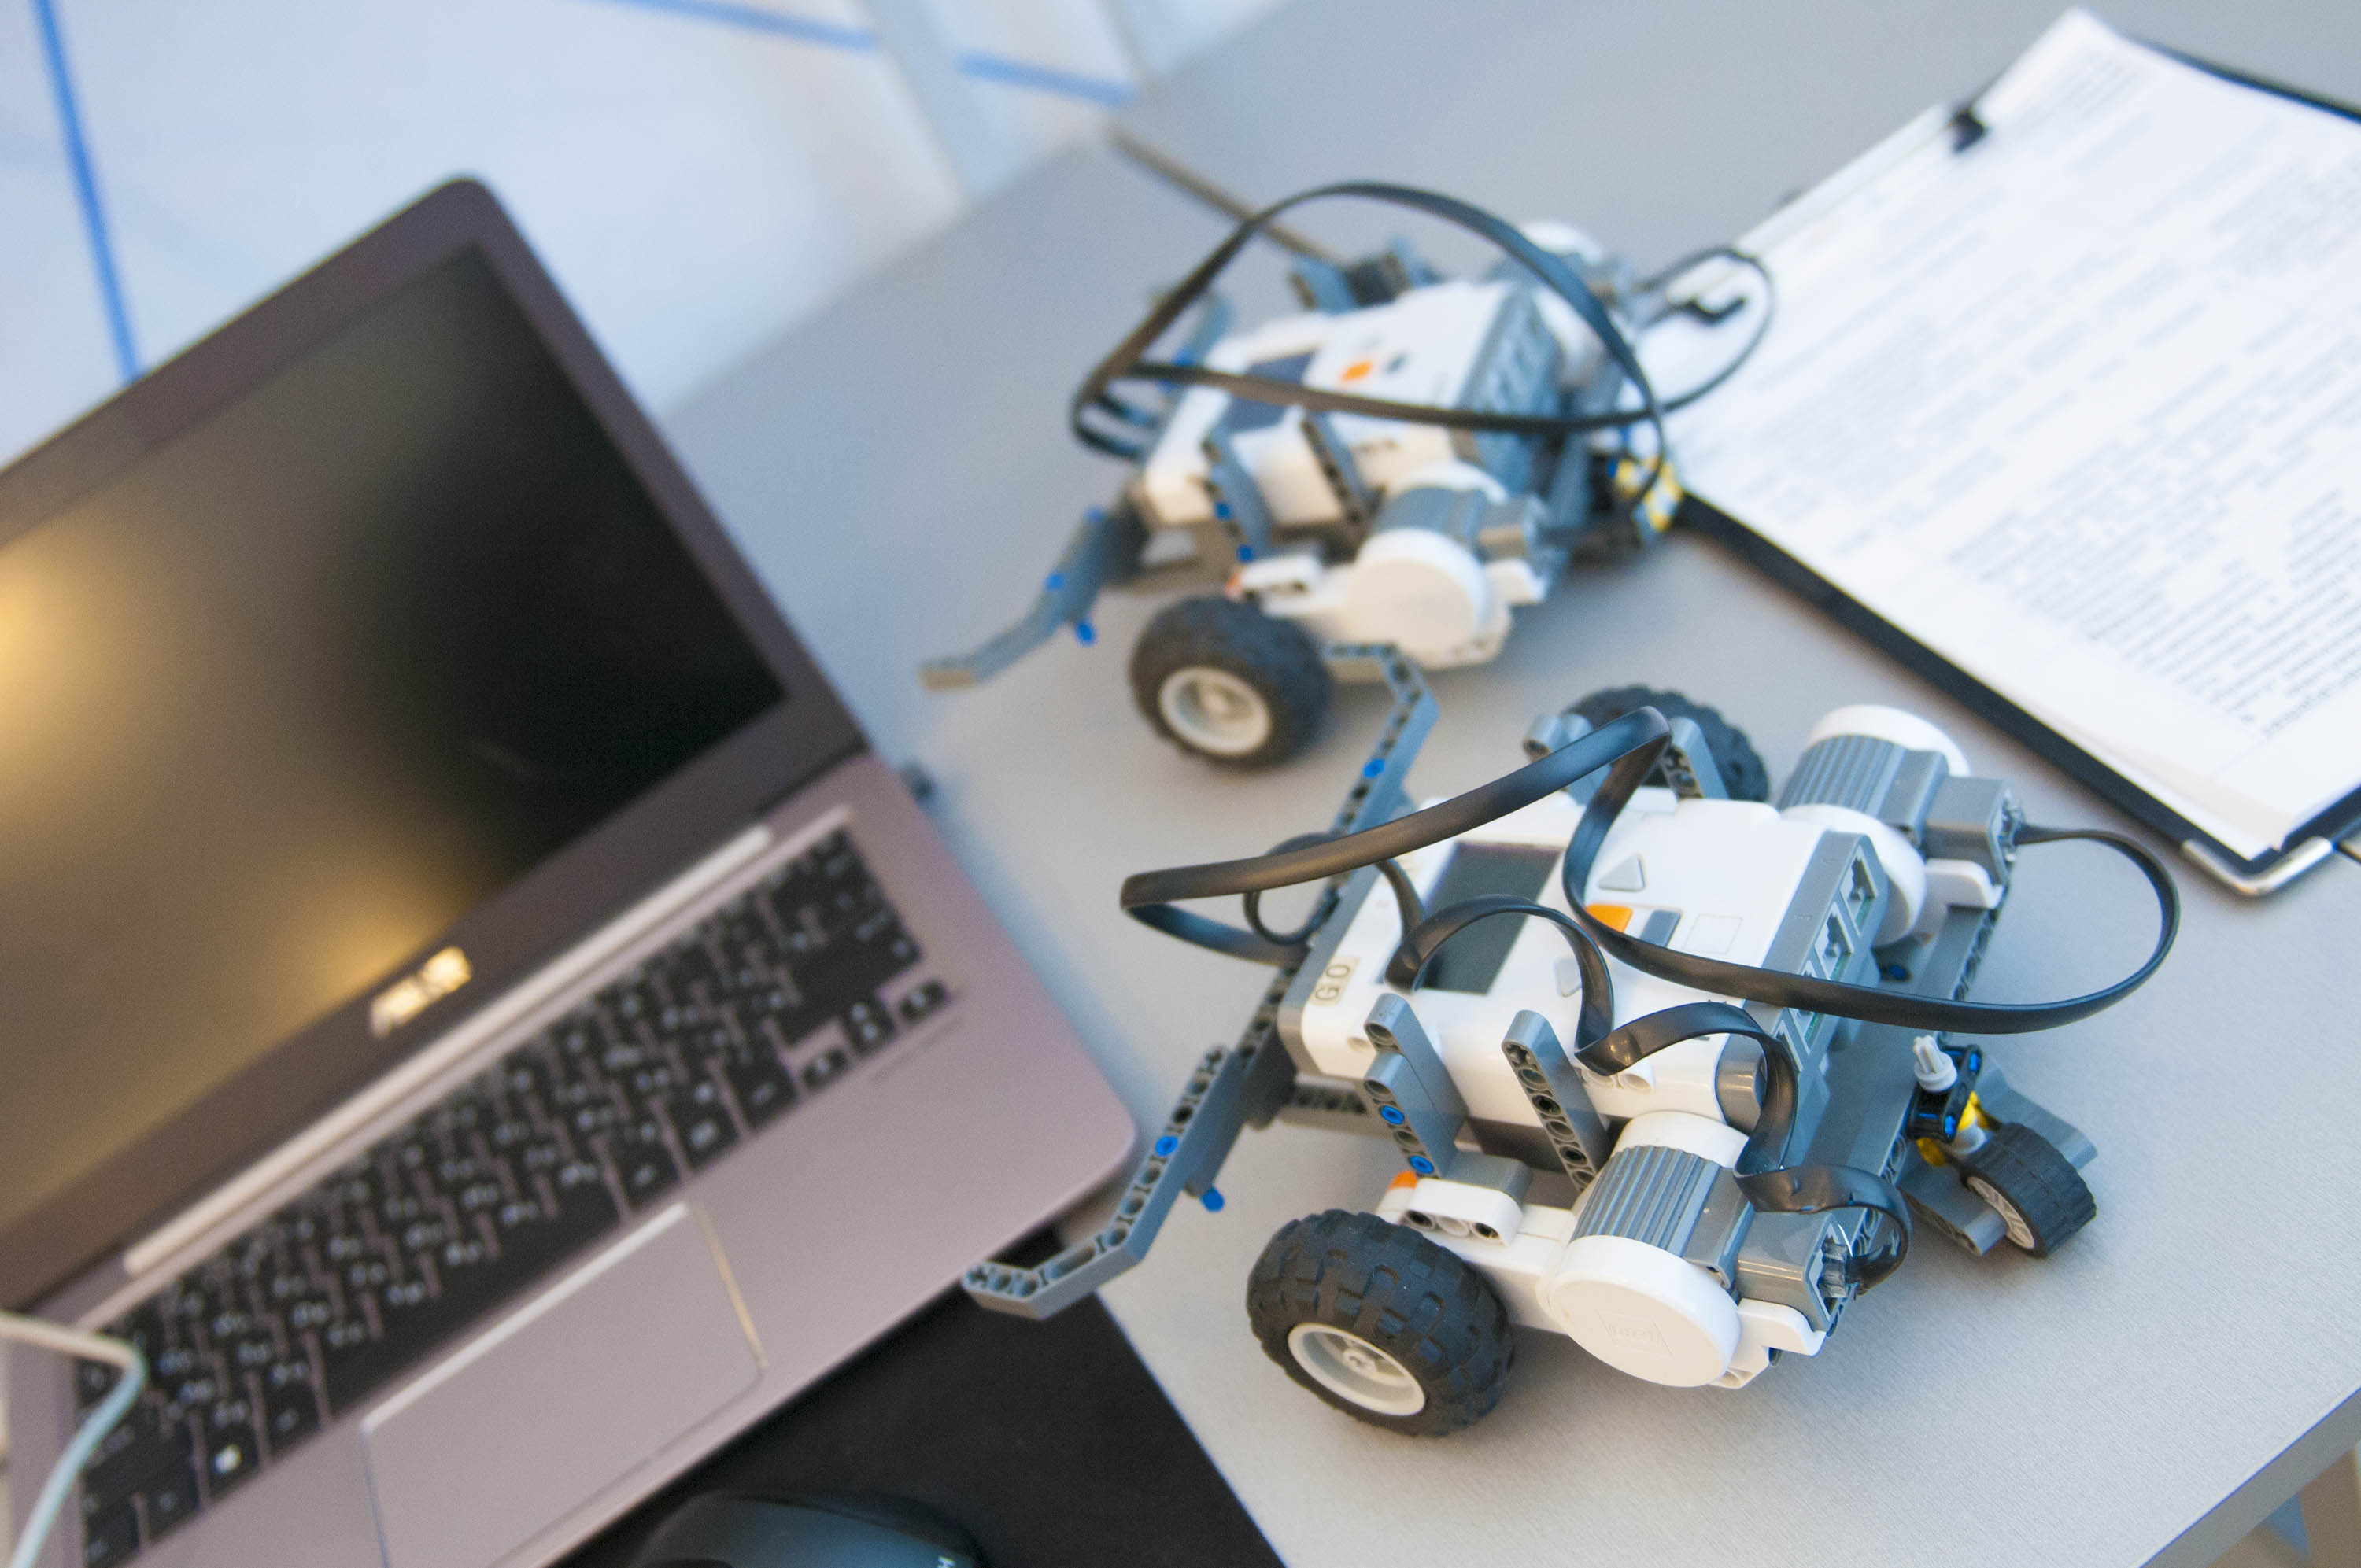 Открыт прием заявок на участие в региональном конкурсе по креативному программированию и робототехнике в среде «Scrаtch» 